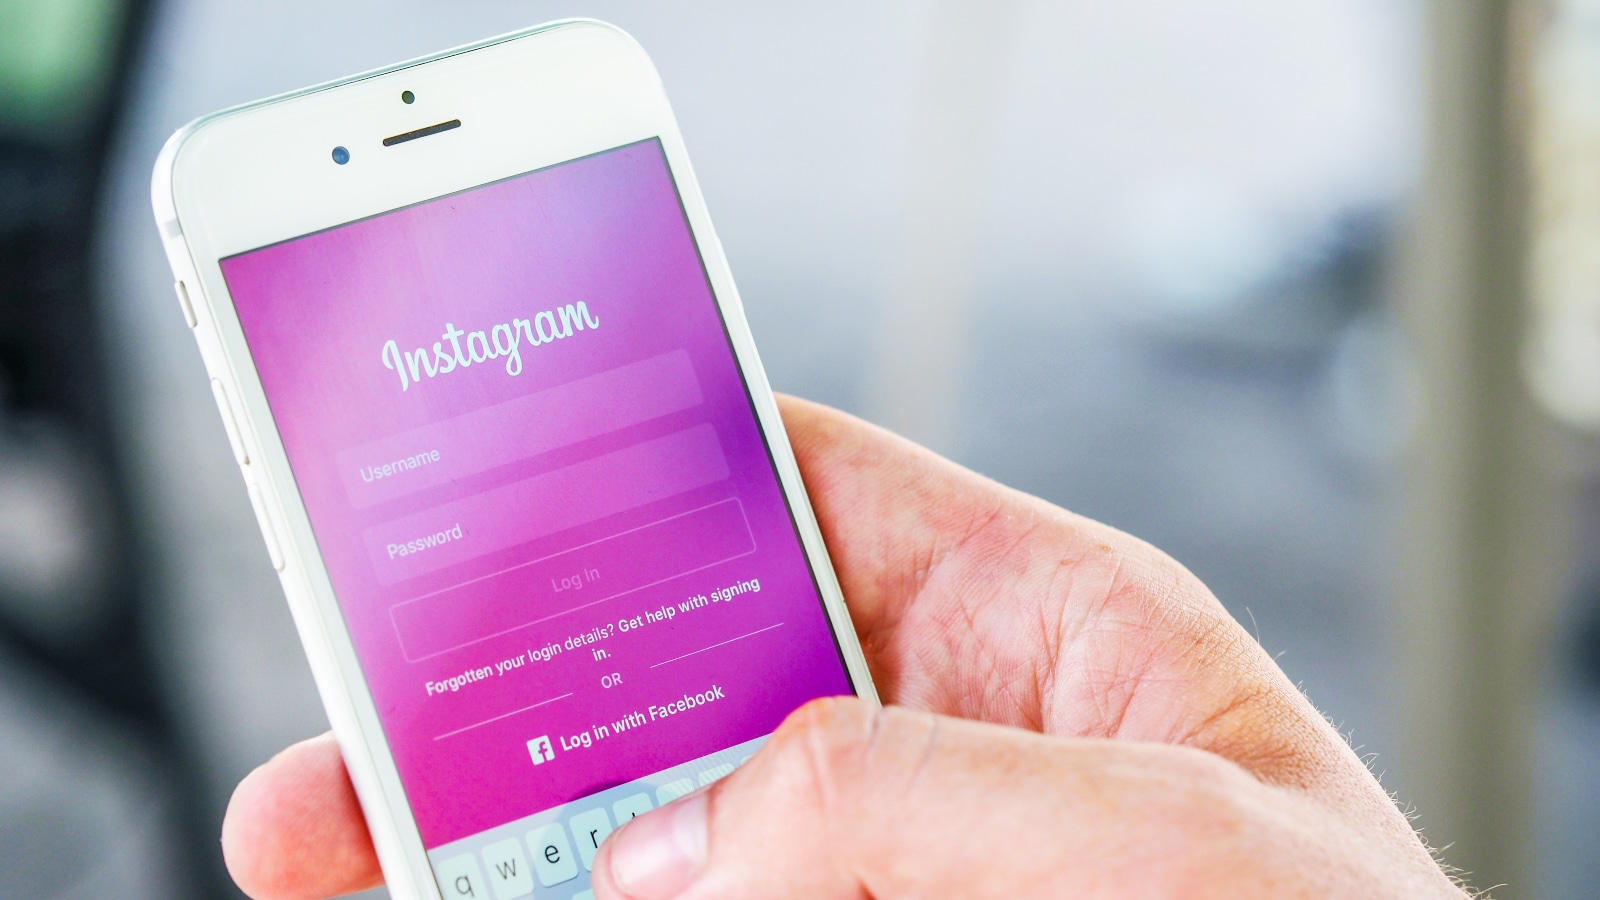 Facebook serait en train de mettre en place un Instagram pour les moins de 13 ans.